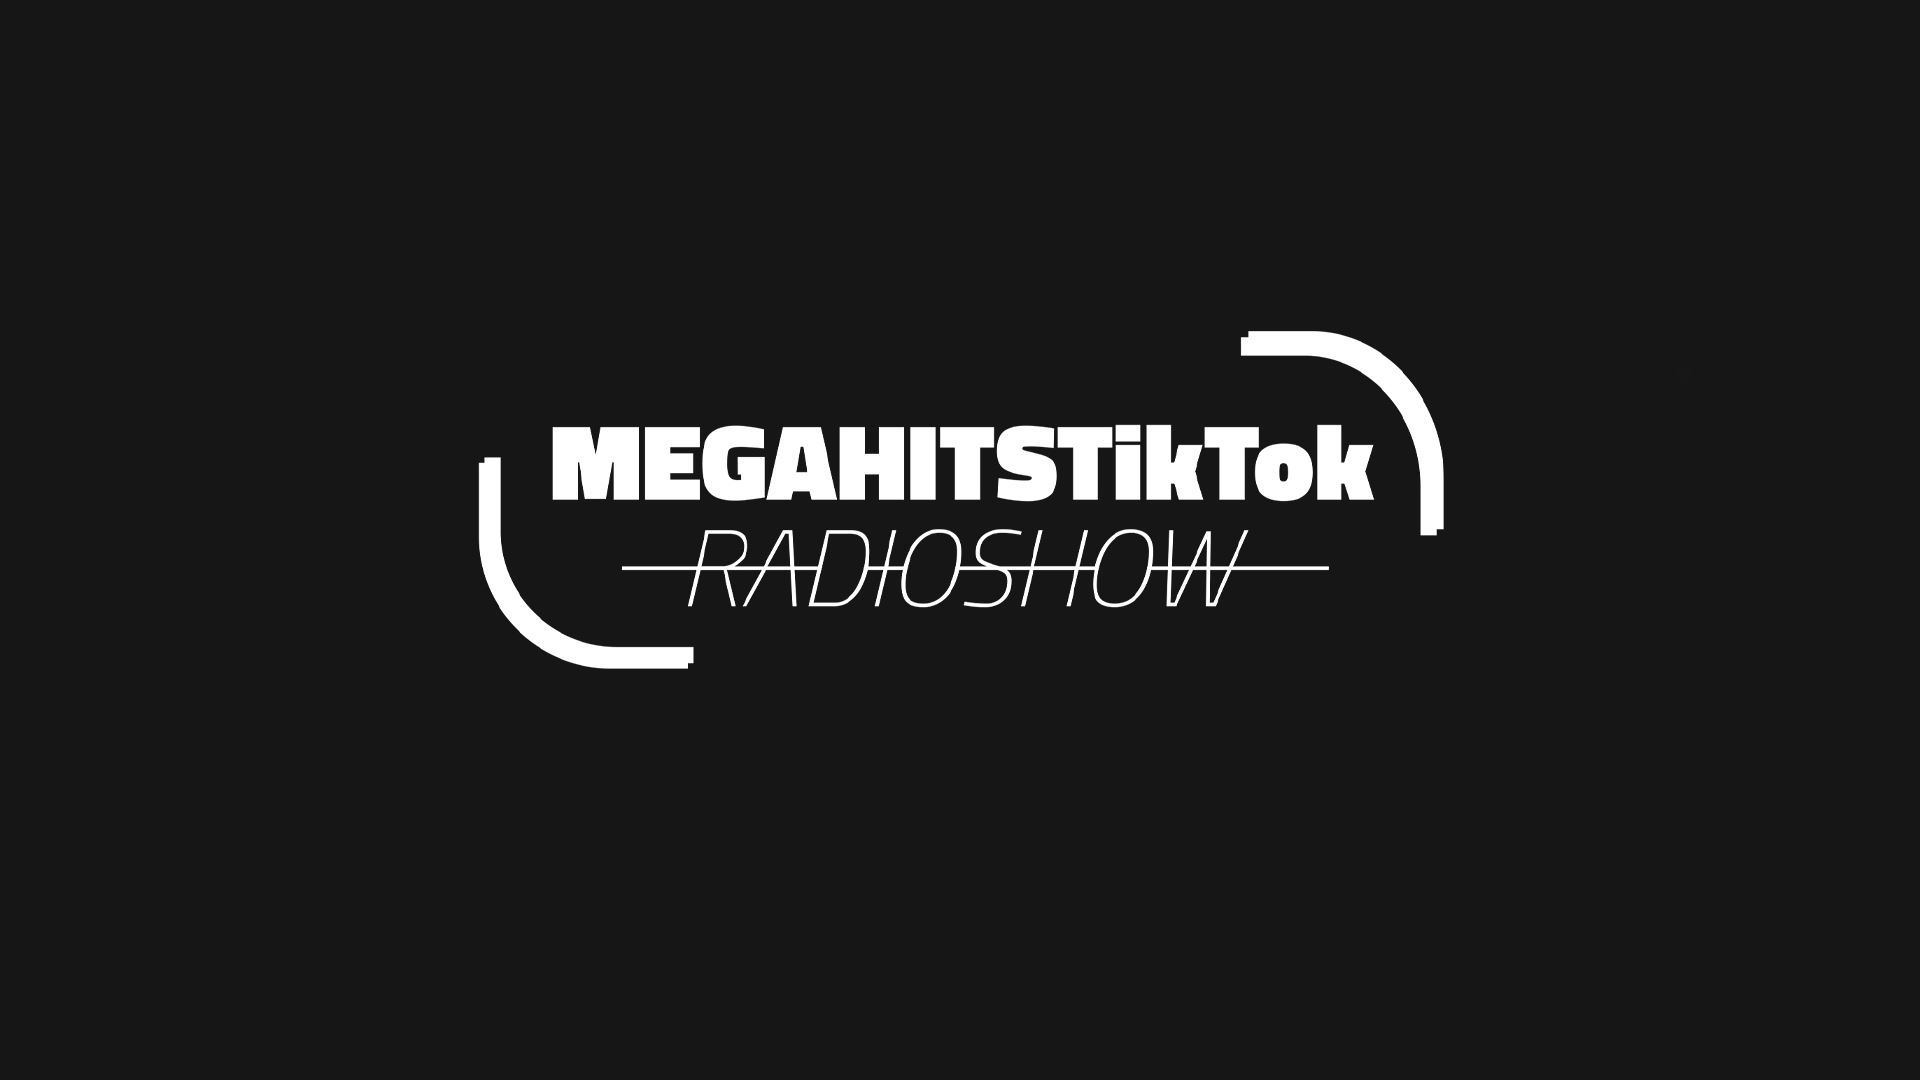 MEGAHITSTIKTOK Radioshow #69